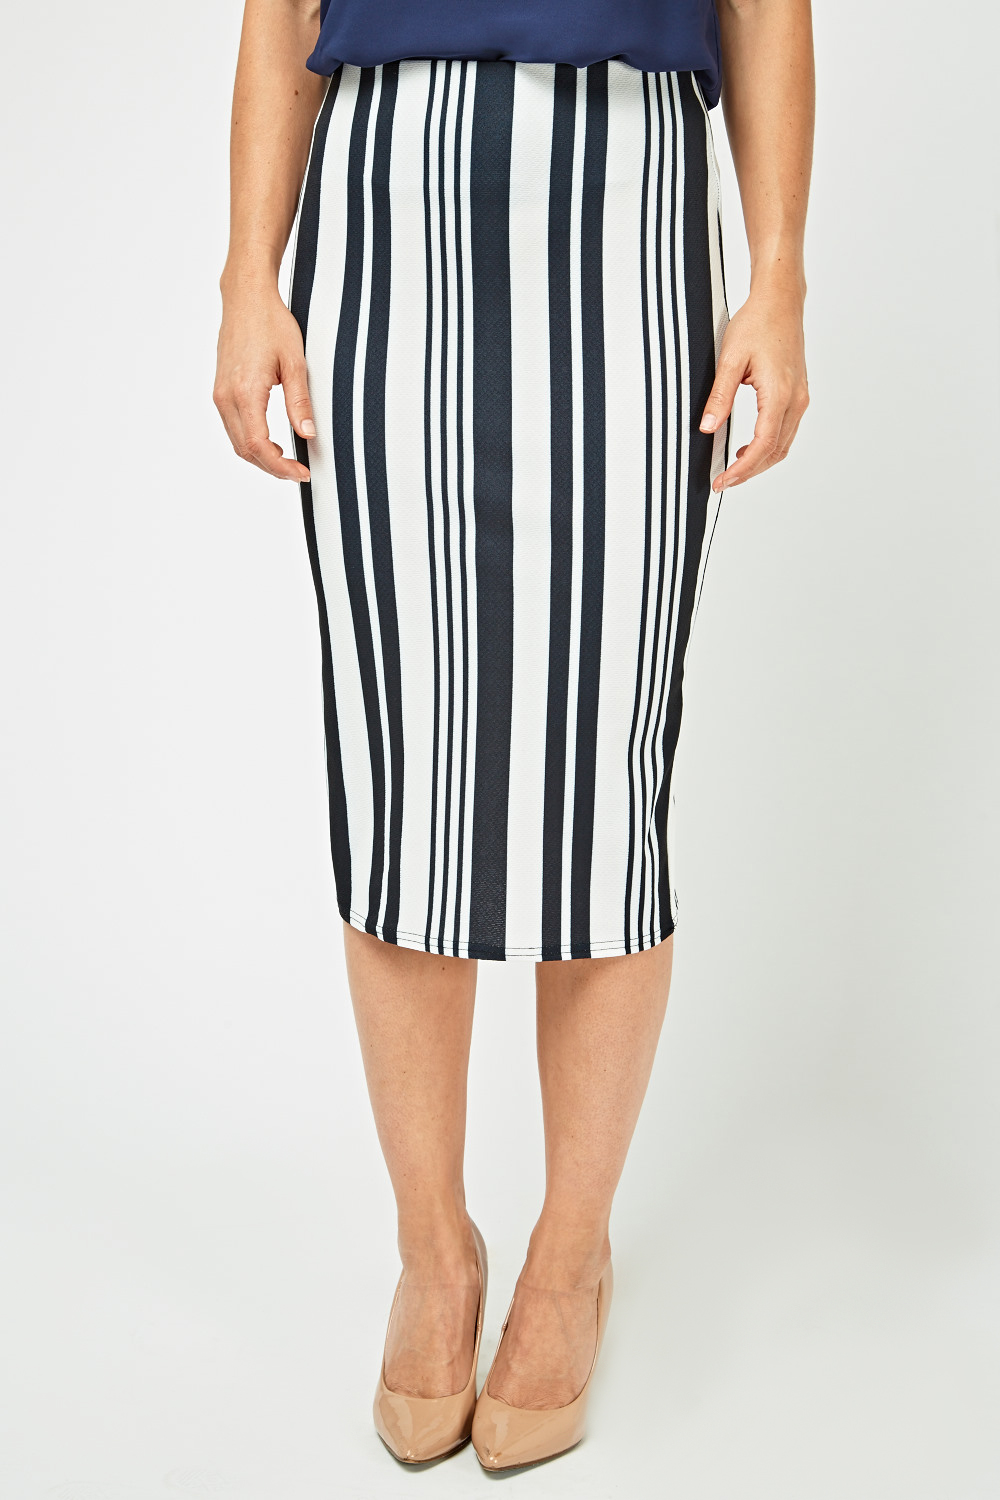 Vertical Stripe Midi Skirt - Just $6